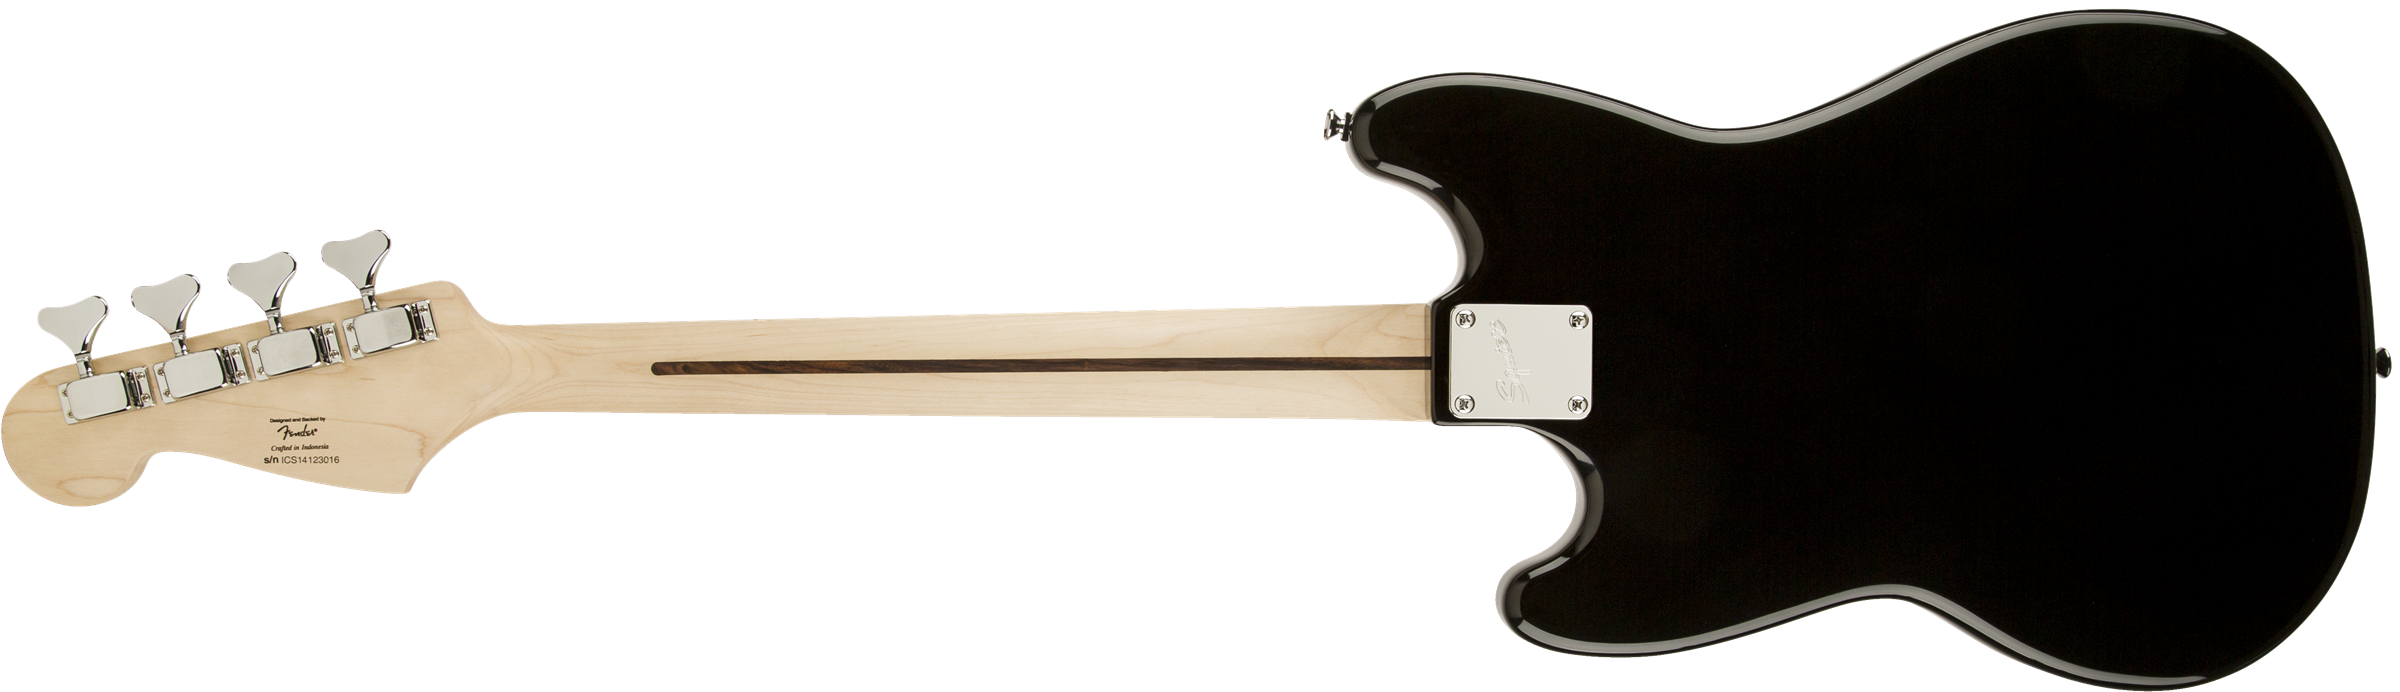 Squier Bronco Bass Mn - Black - E-Bass für Kinder - Variation 1